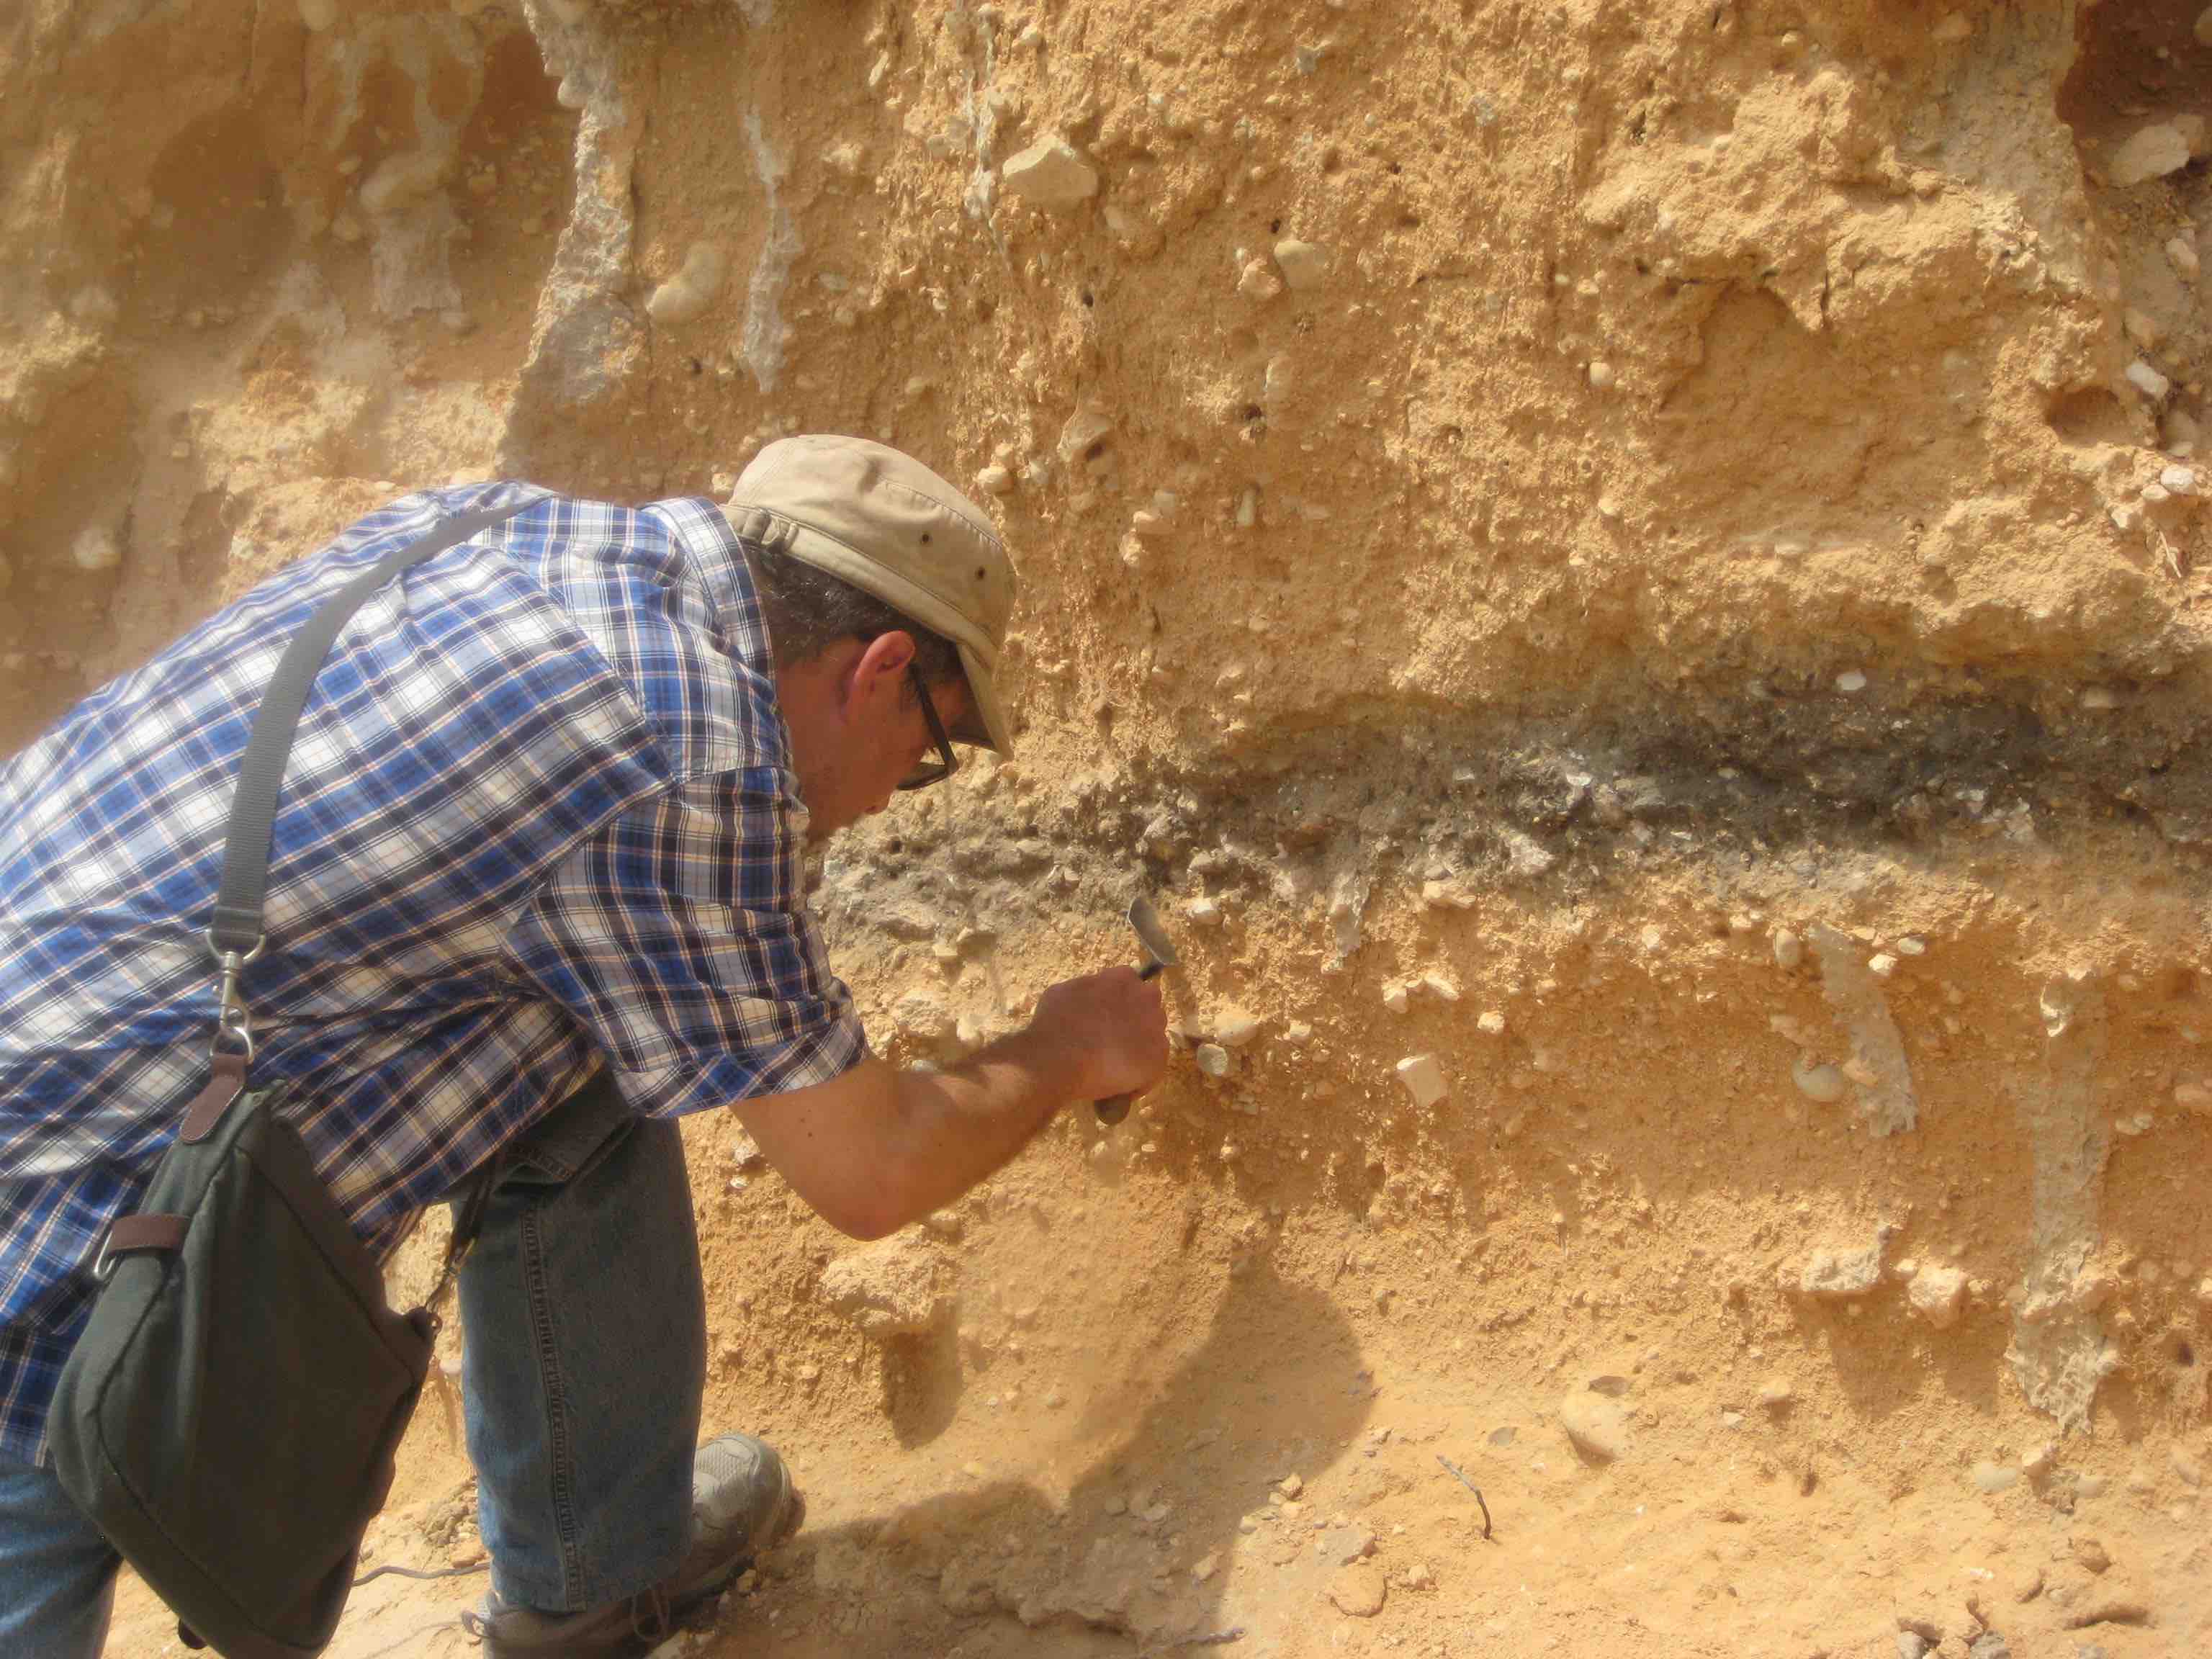 Geógrafo calasparreño descubre restos de hogueras realizadas por Neanderthales en las inmediaciones del Río Segura